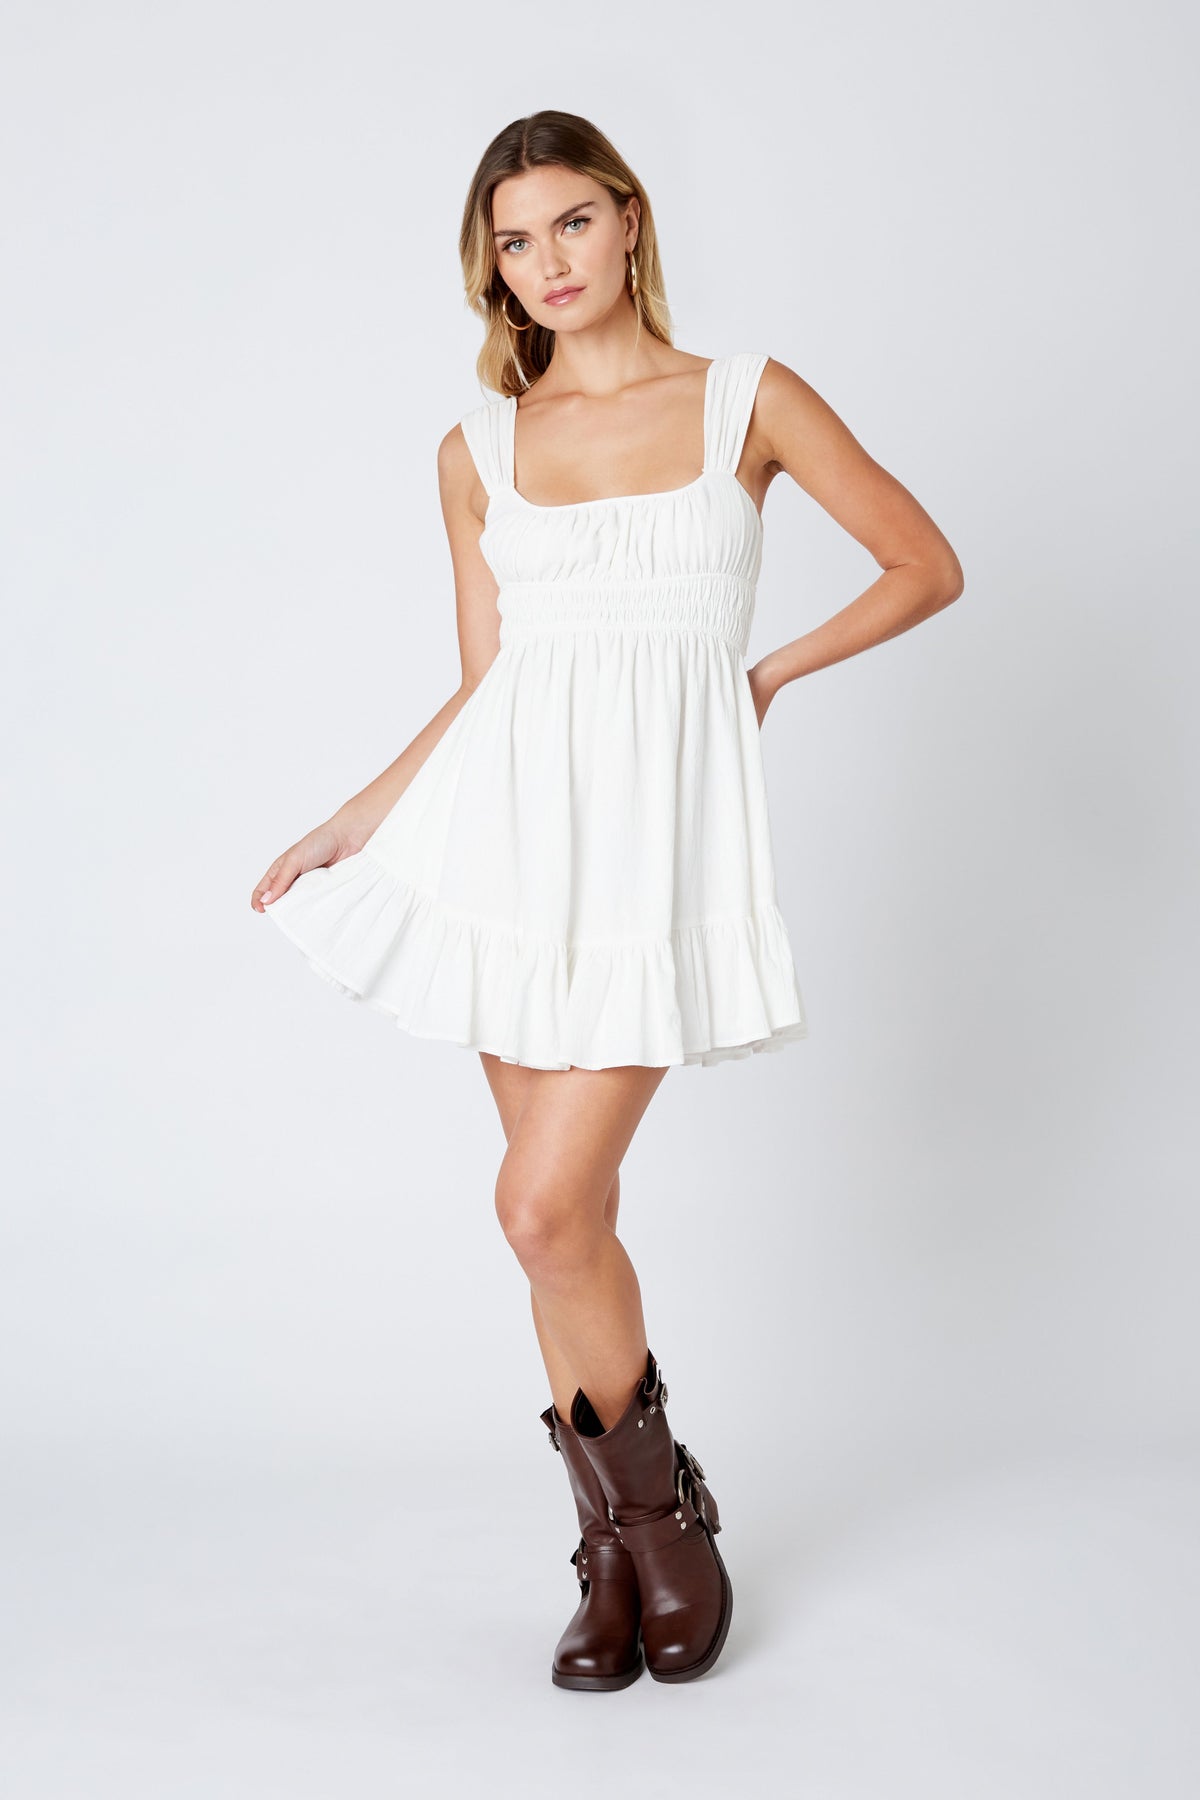 Stasia White Flowy Mini Dress